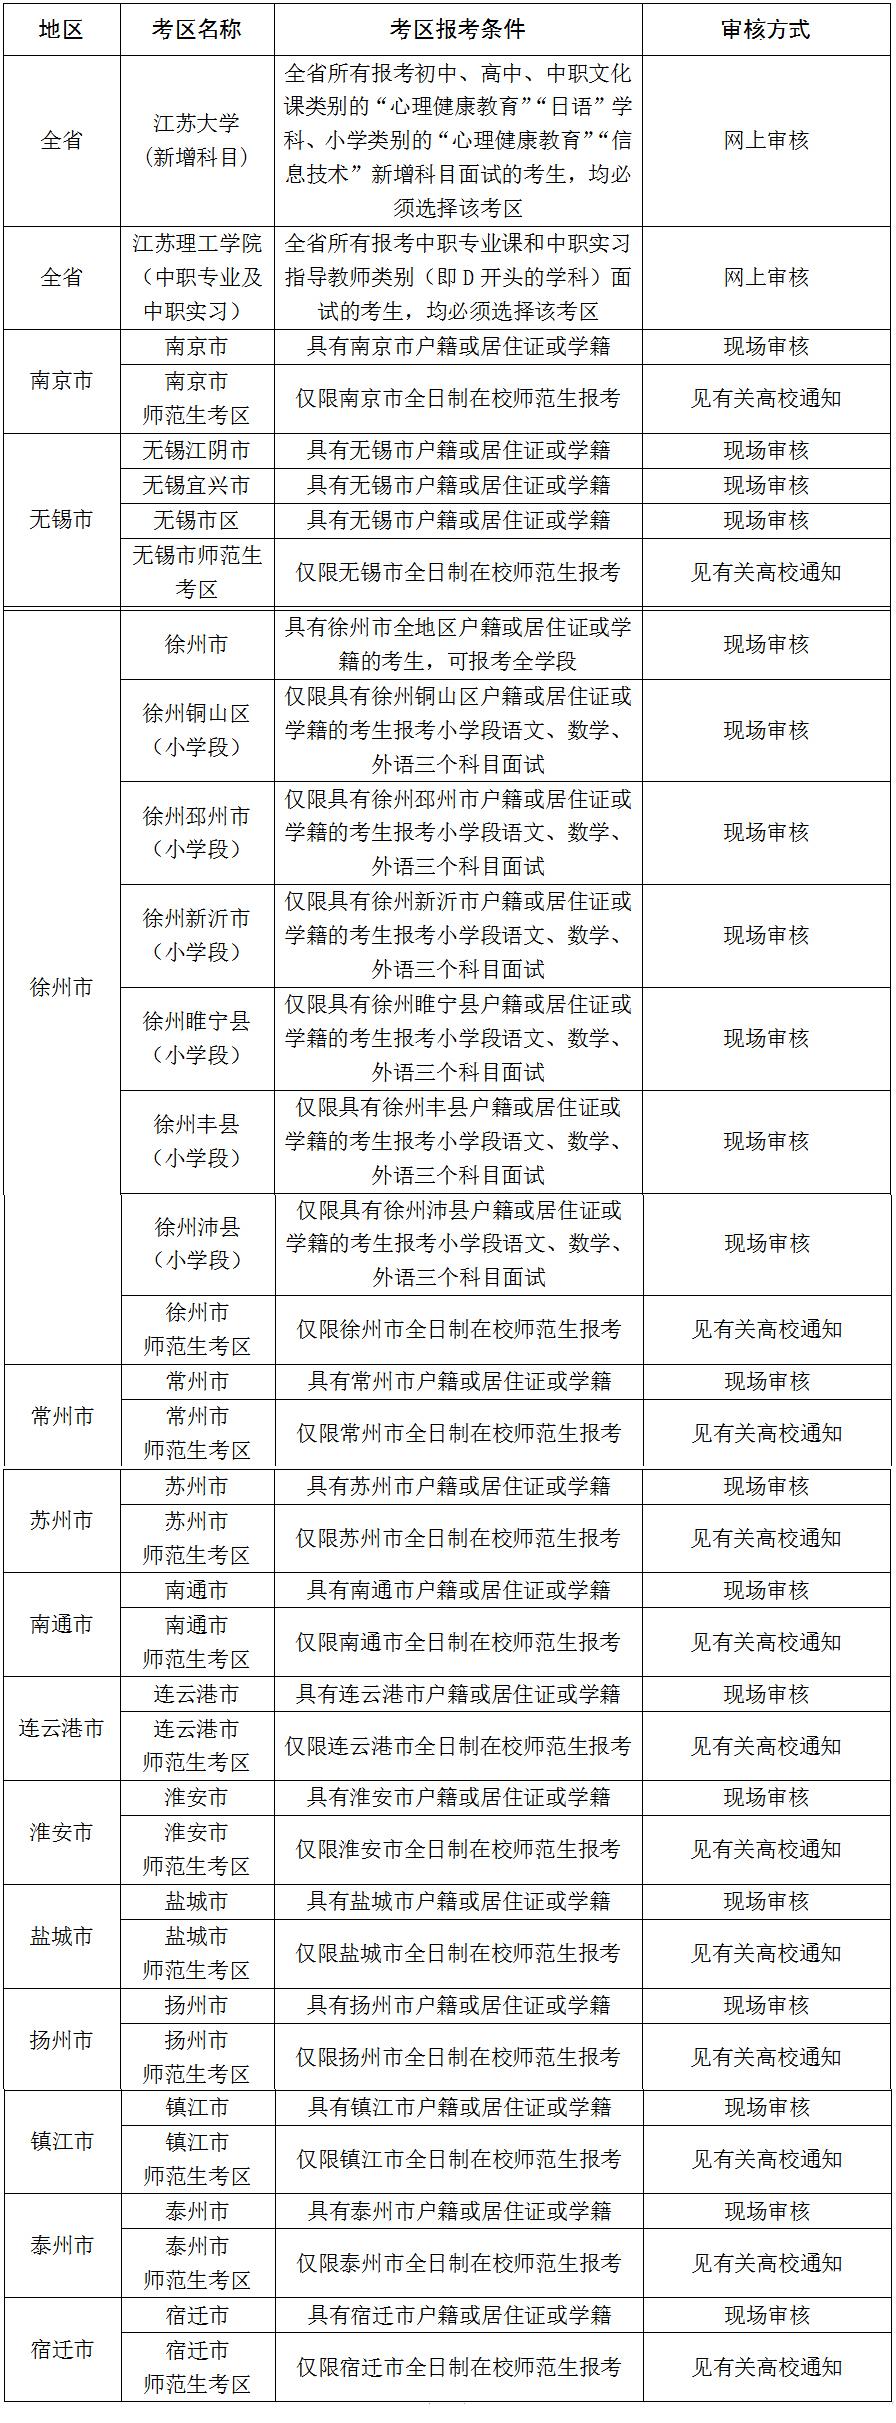 江苏省2020年下半年中小学教师资格考试面试时间定了!